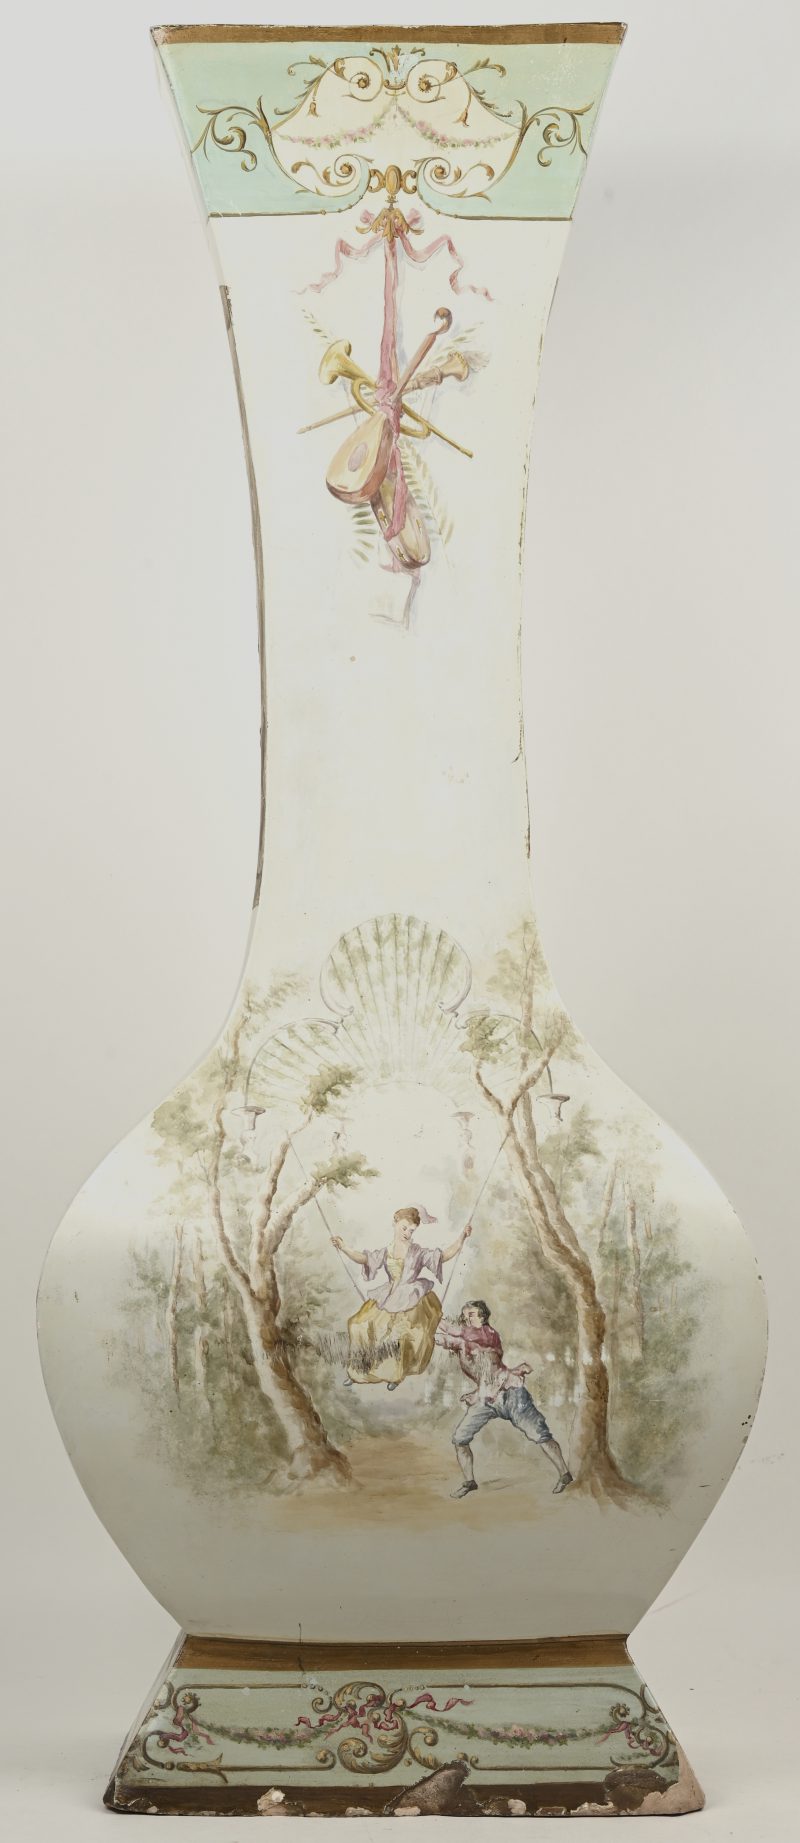 Een 19de eeuwse aardewerken vaas met handgeschilderd romantisch decor. Slijtage en schade onderaan. Minieme verfschade en oude herstellingen.